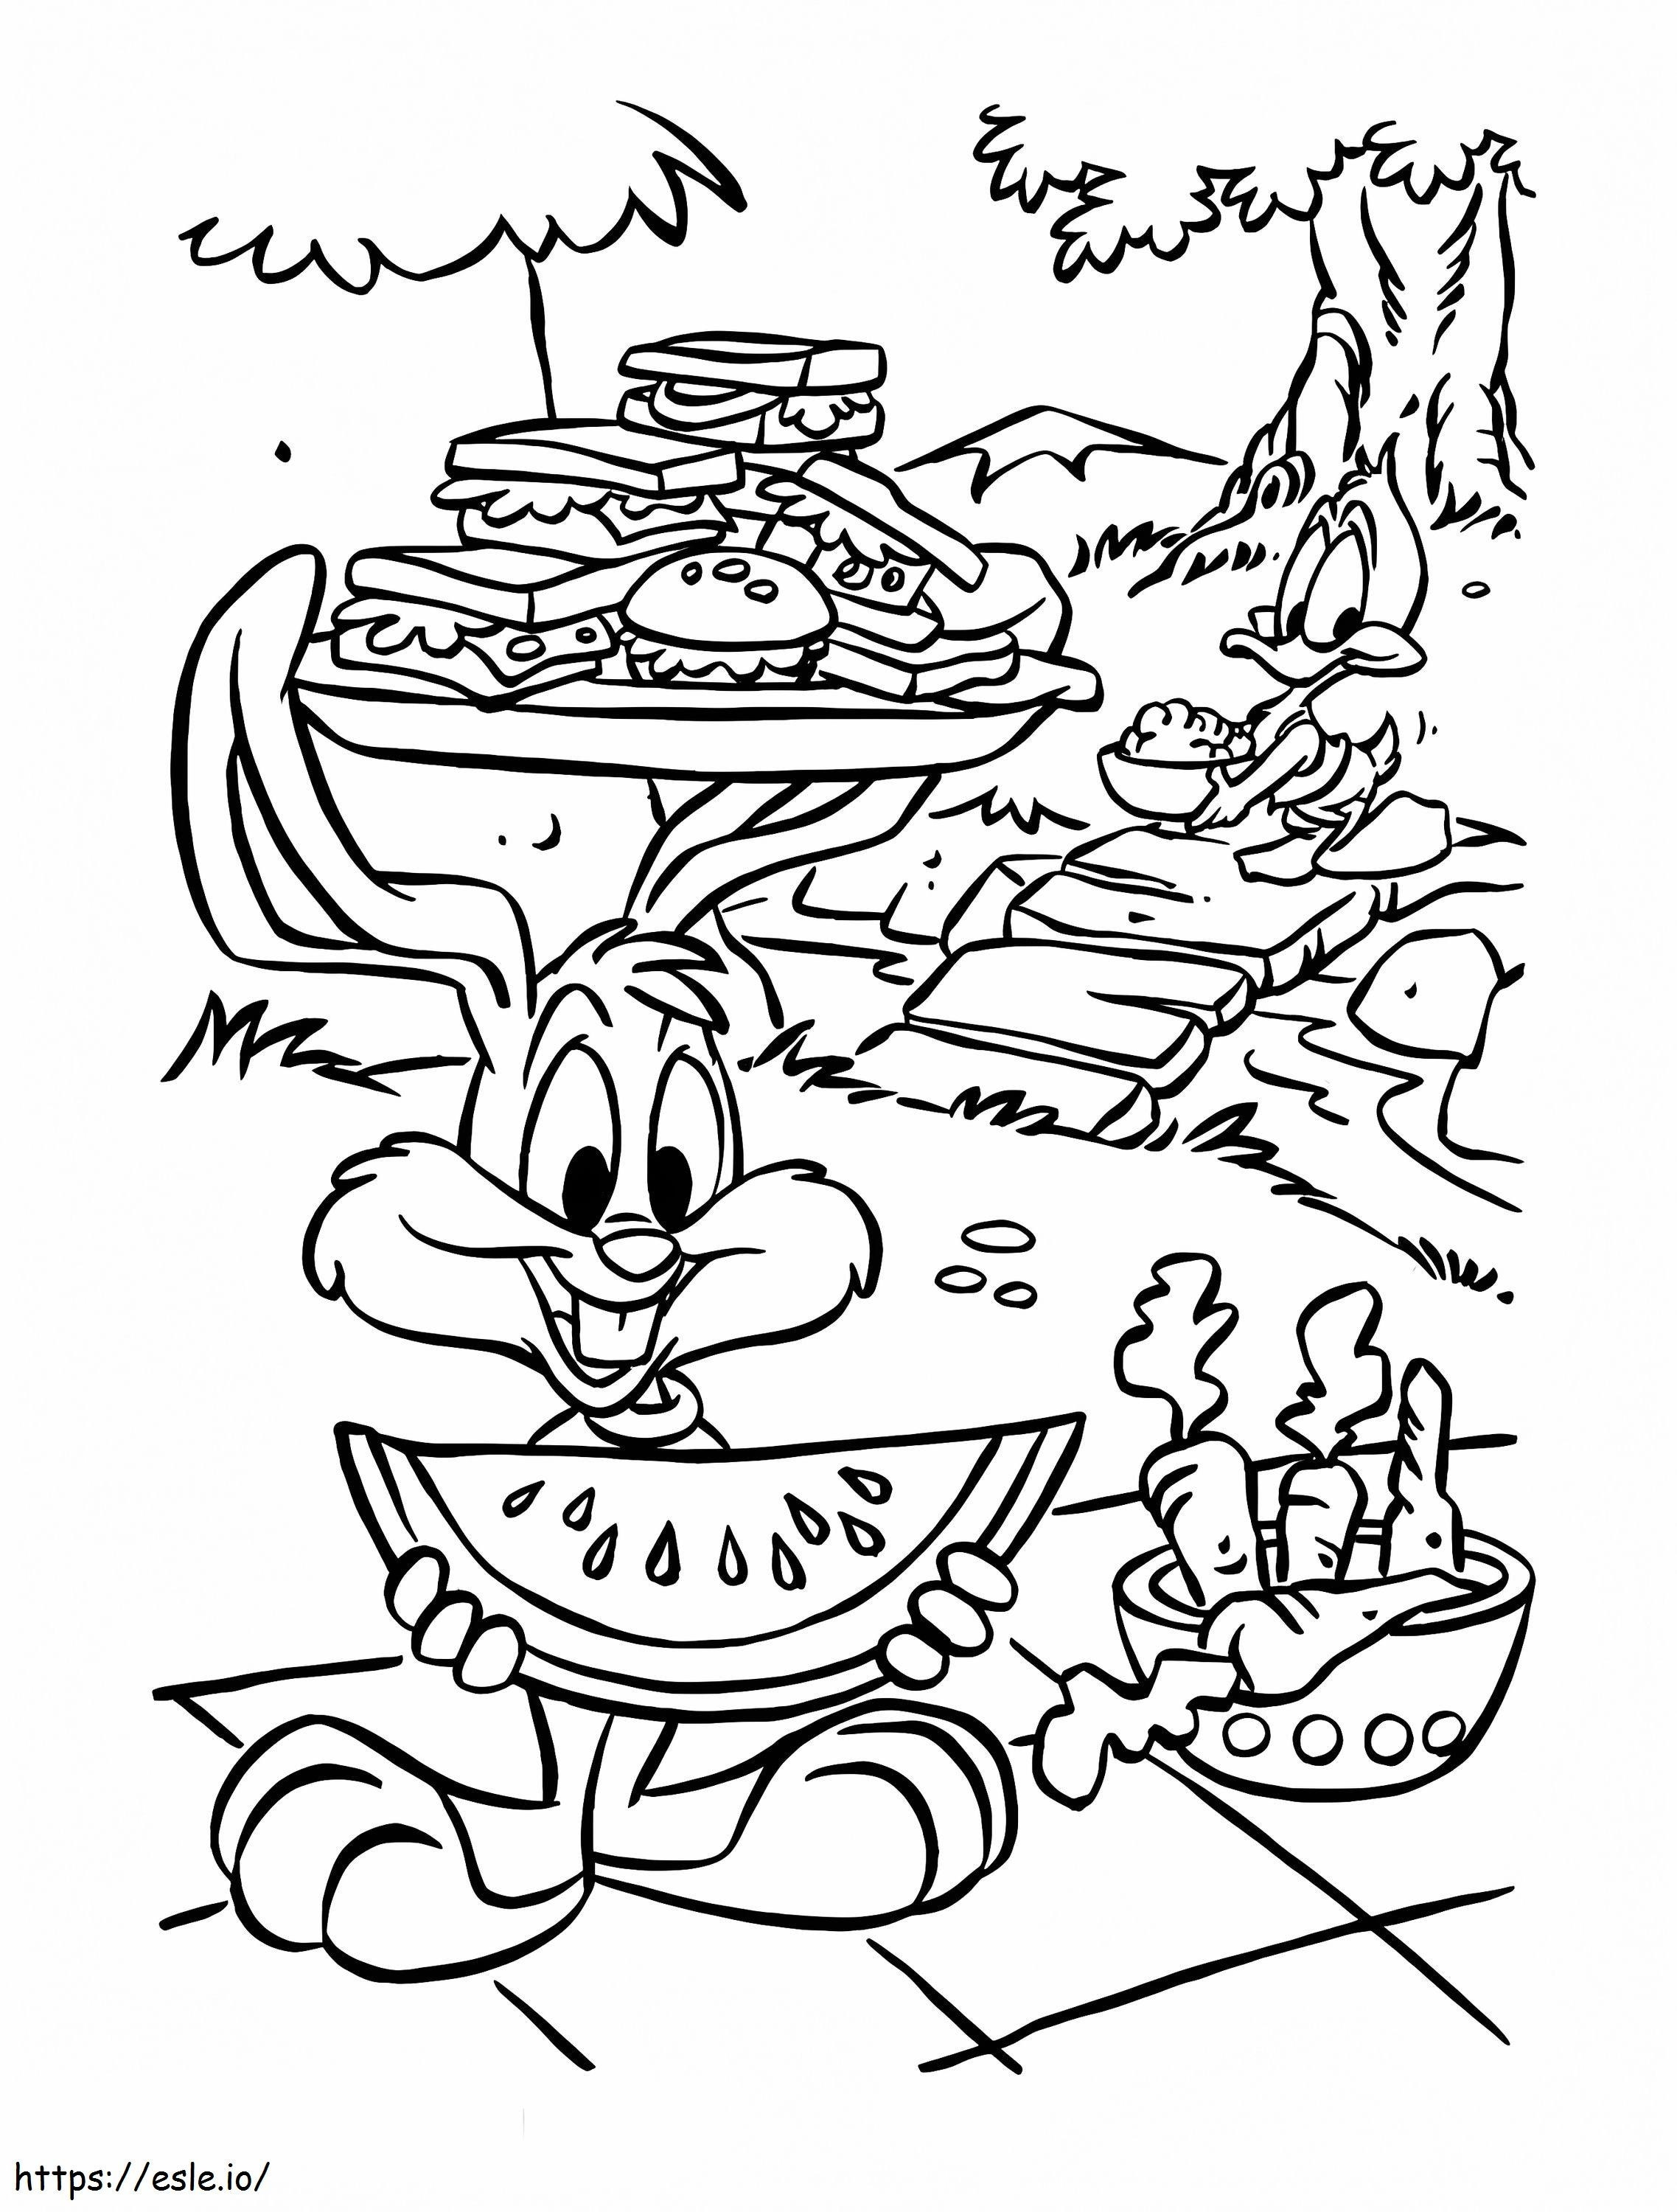 Buster Bunny auf einem Picknick ausmalbilder